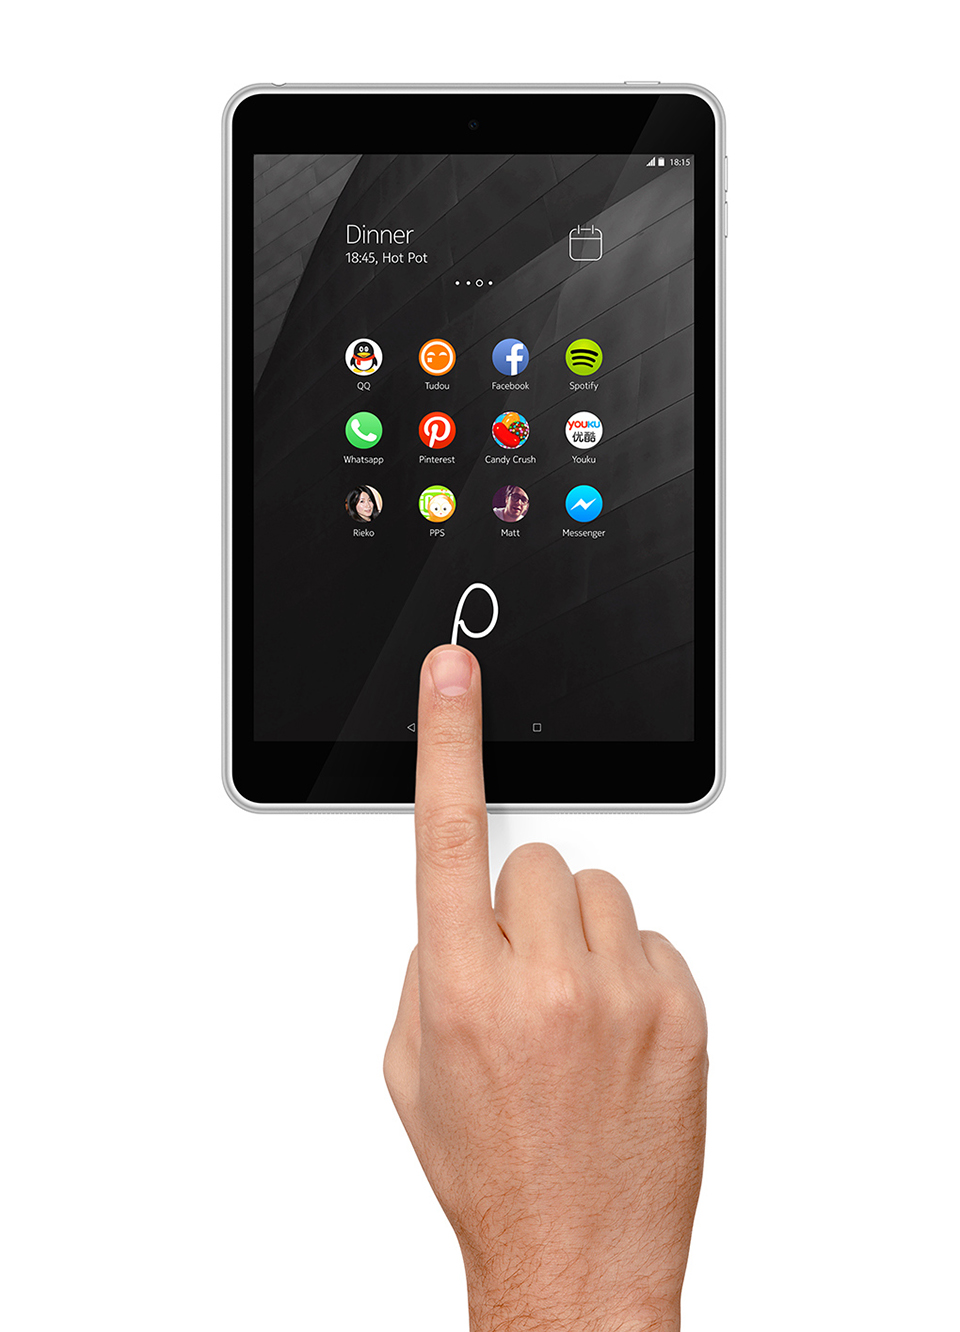 Tablet Nokia N1 chạy Android 5.0 Lollipop mới nhất và giao diện Z Launcher tự phát triển của Nokia